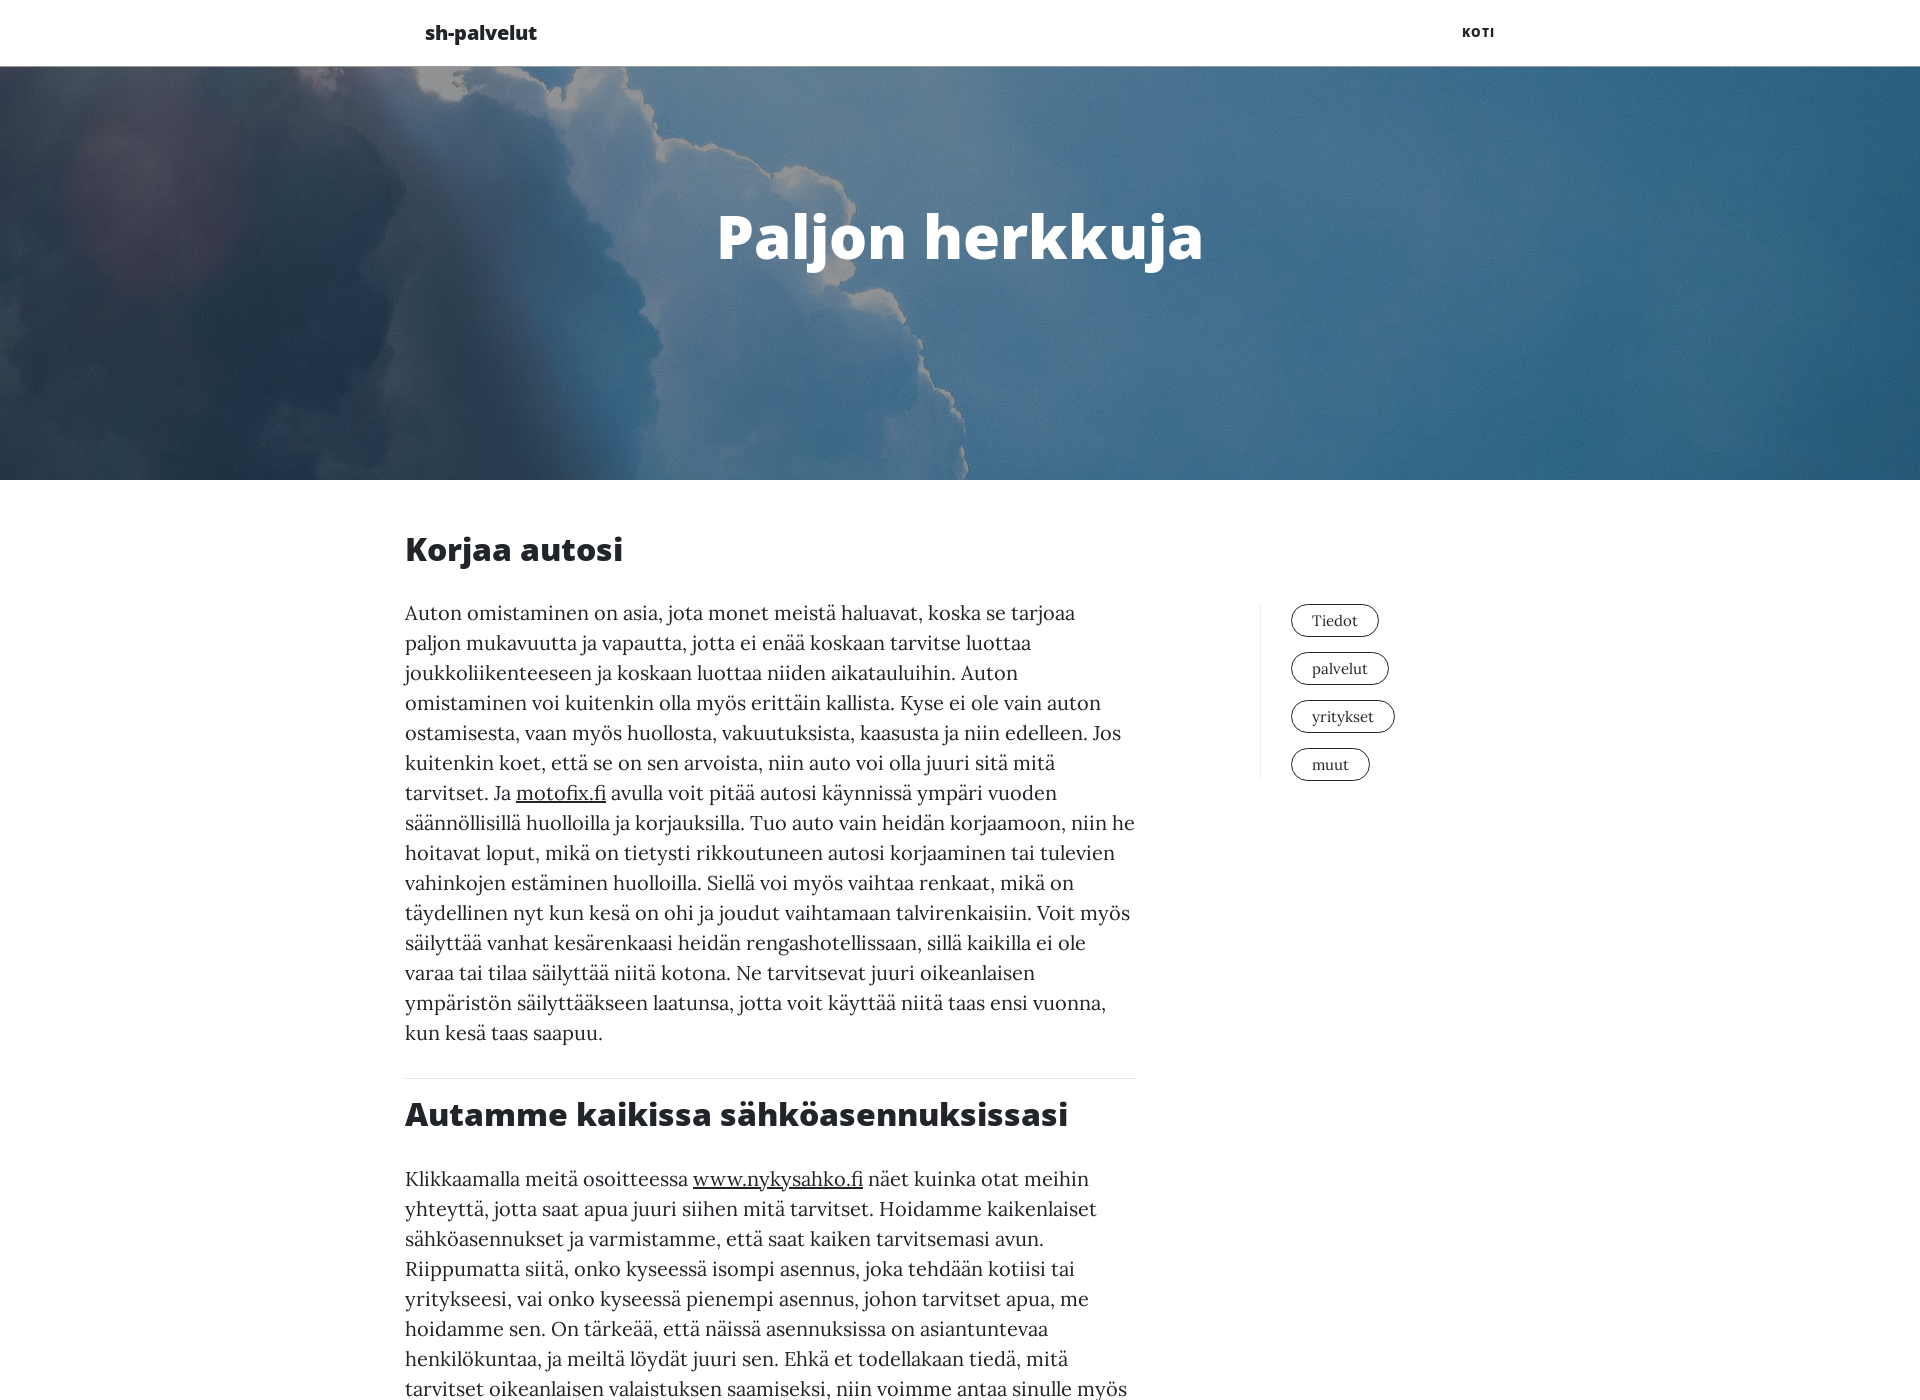 Screenshot for sh-palvelut.fi